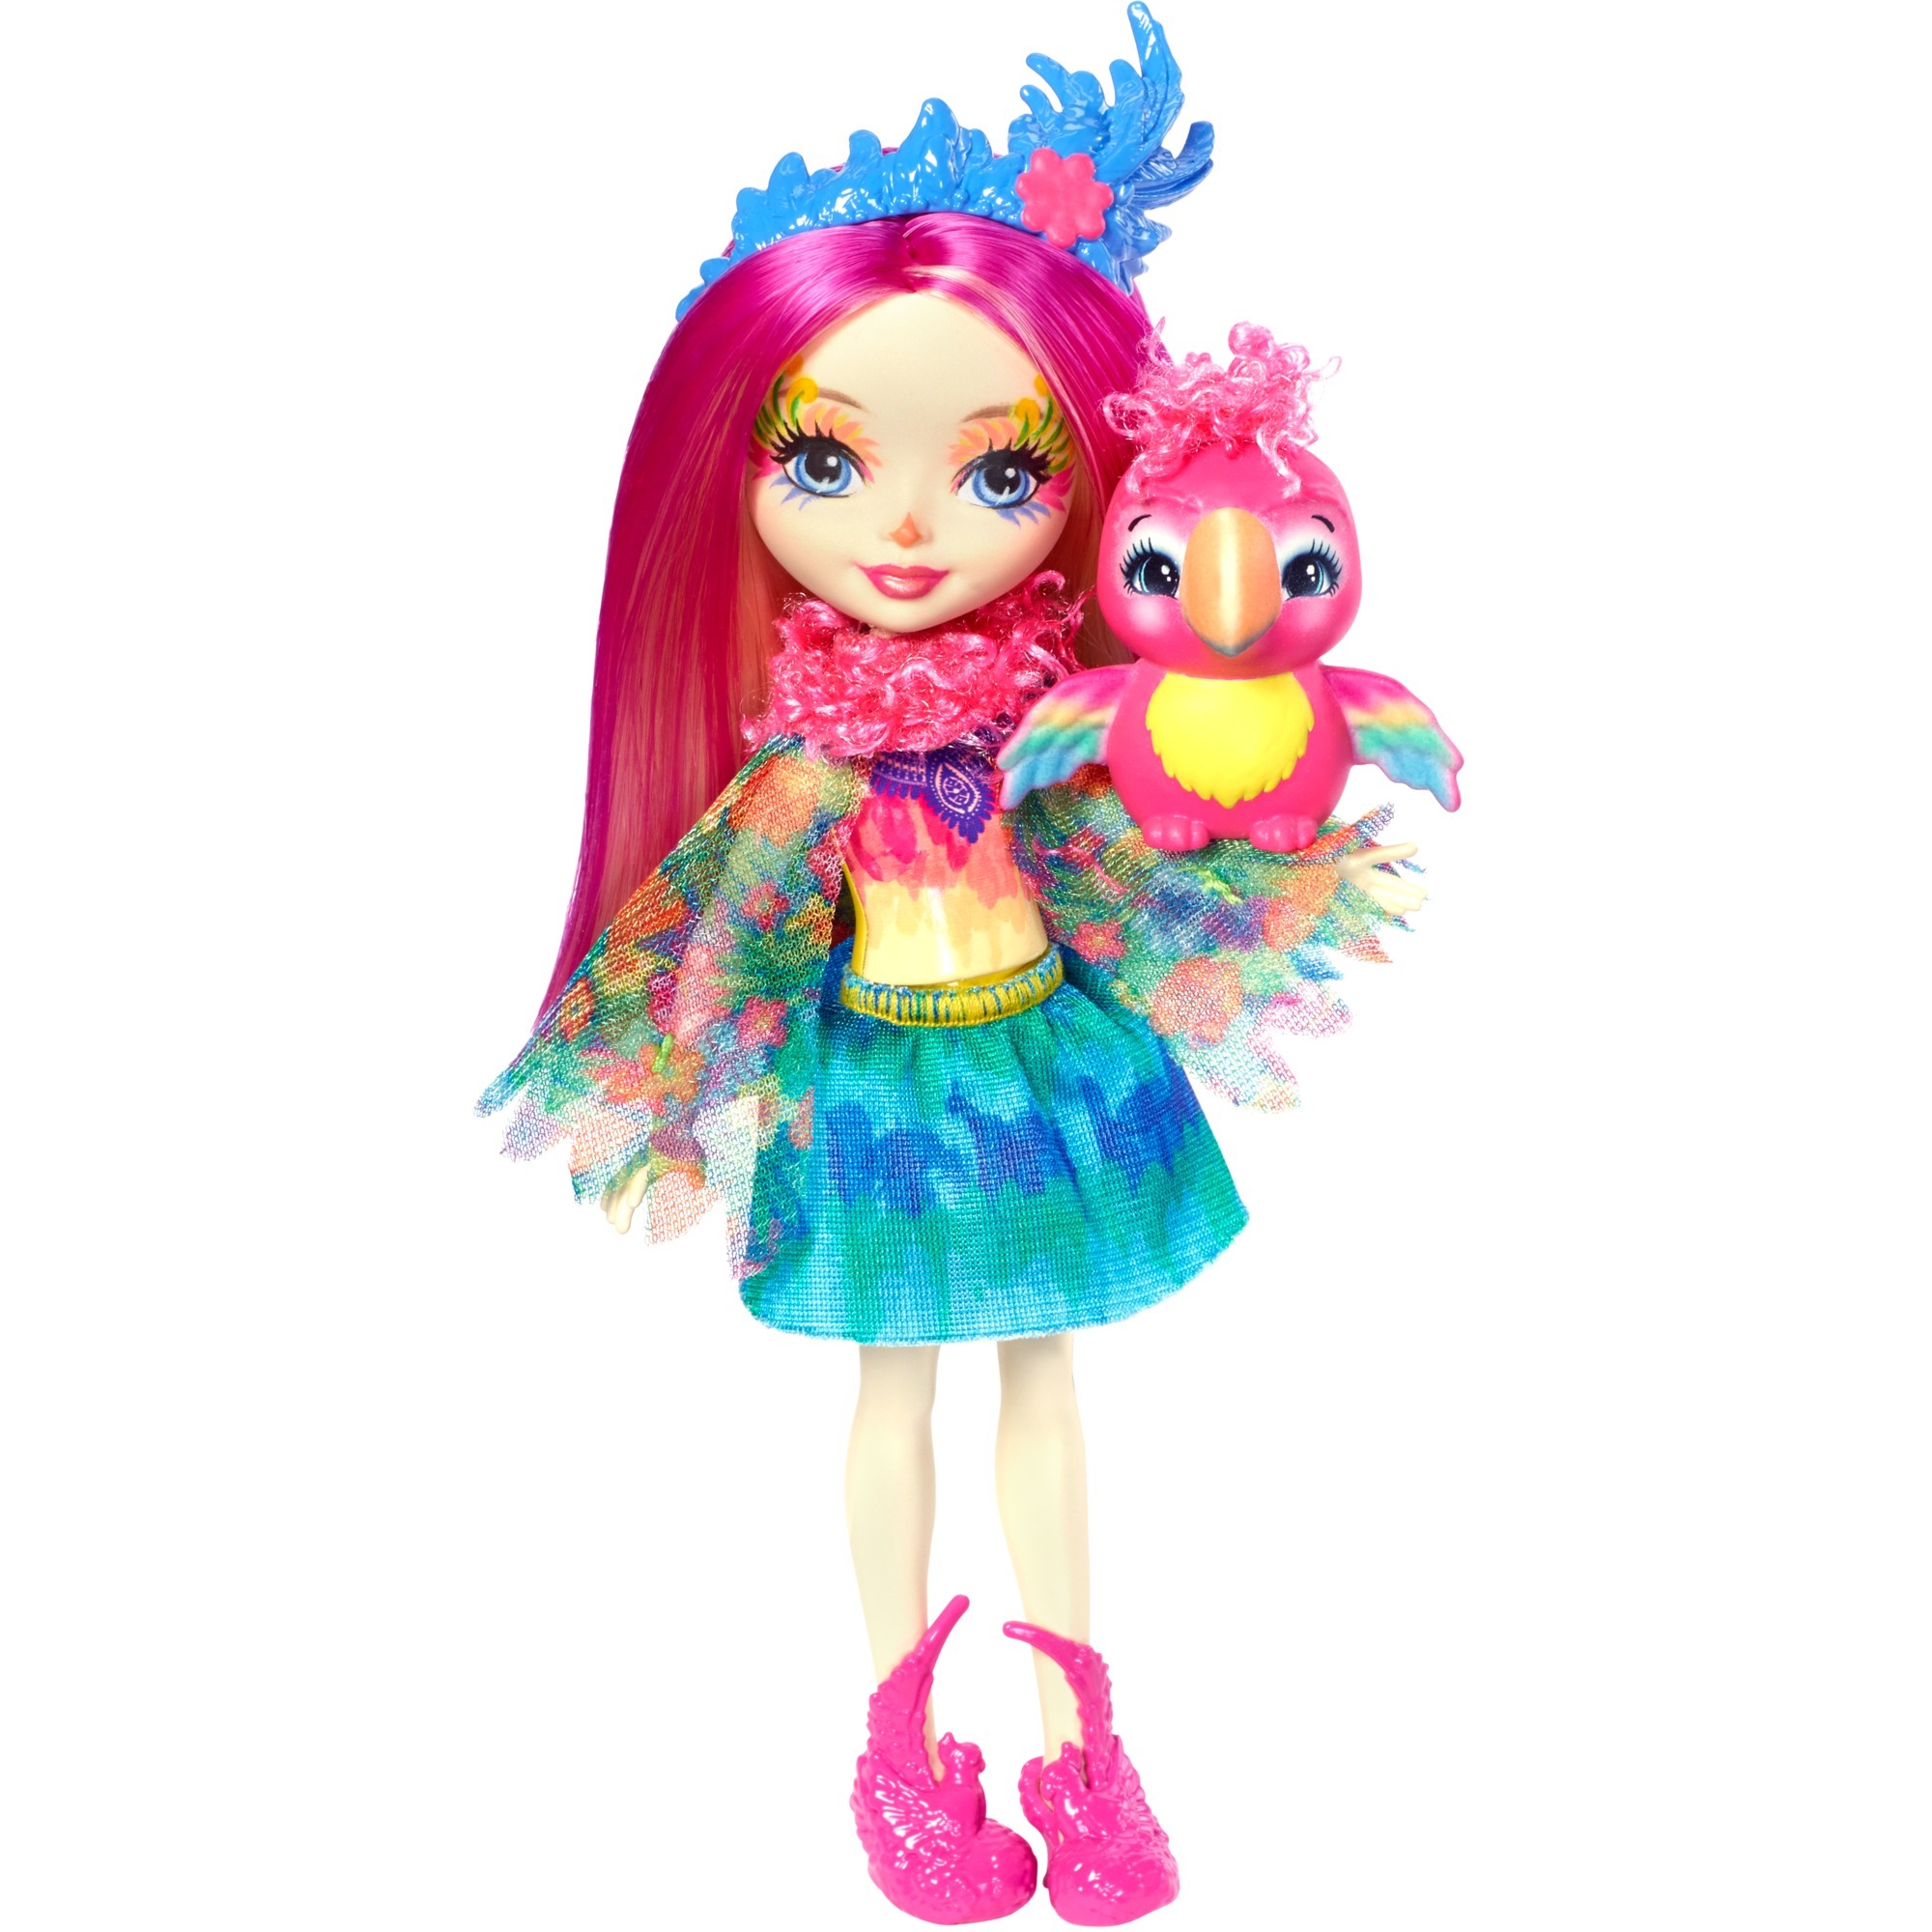 Image of Alternate - Papageienmädchen Peeki Parrot, Puppe online einkaufen bei Alternate